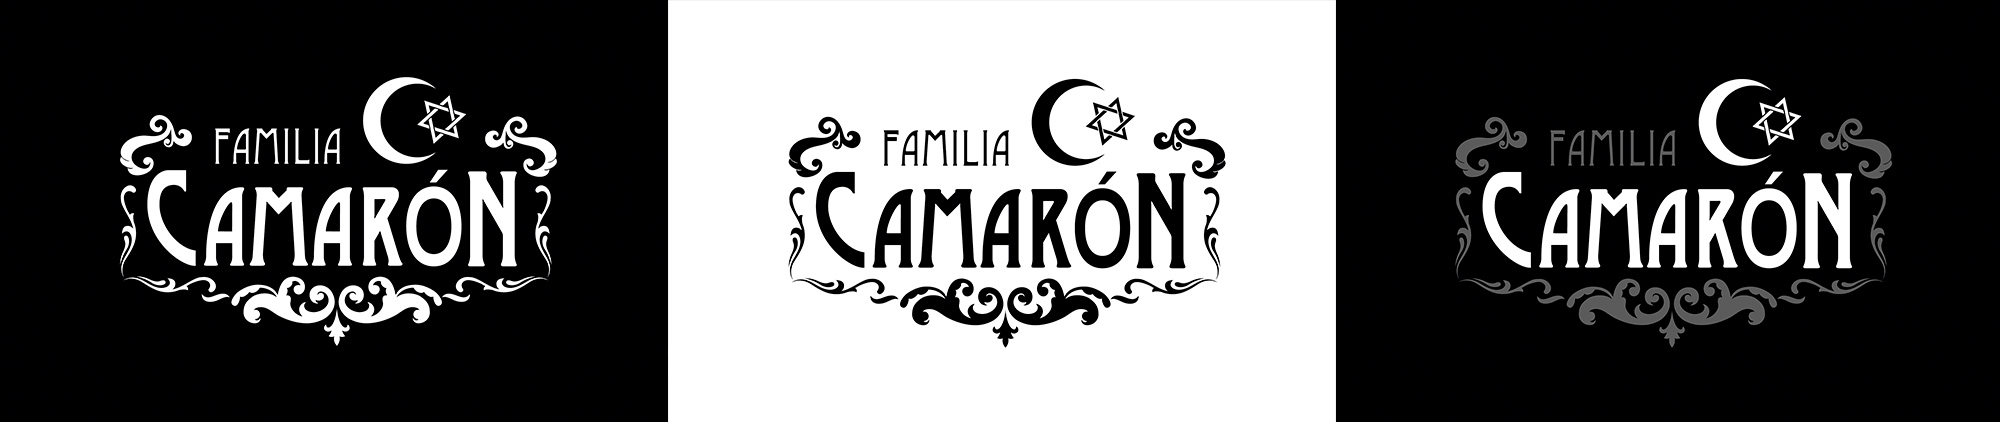 Familia Camarón - Logotipo versiones